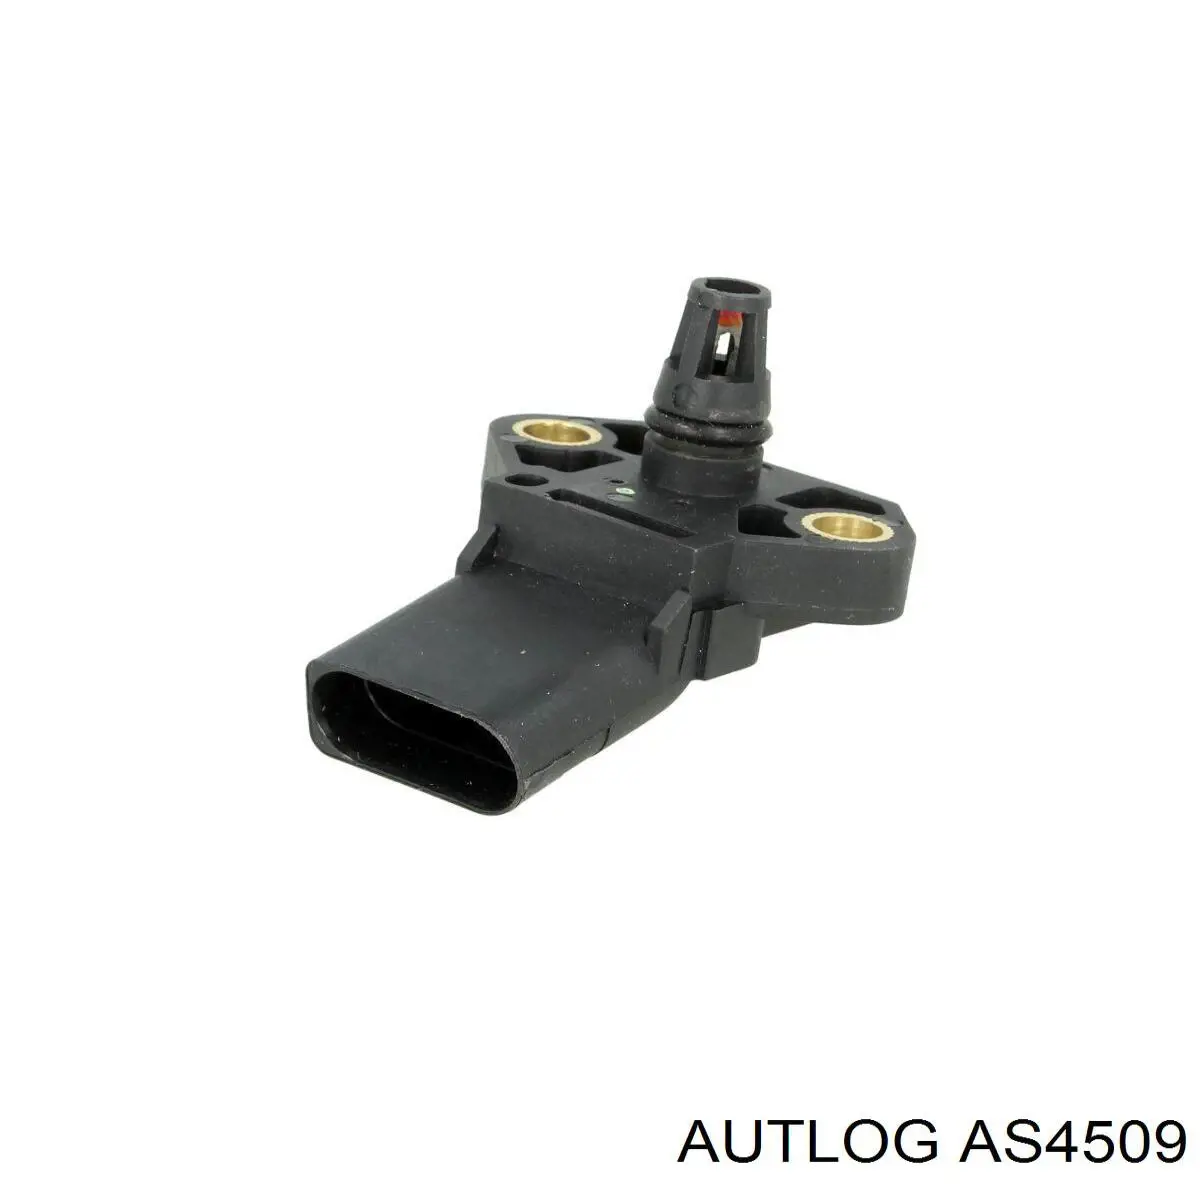 AS4509 Autlog sensor de presion de carga (inyeccion de aire turbina)